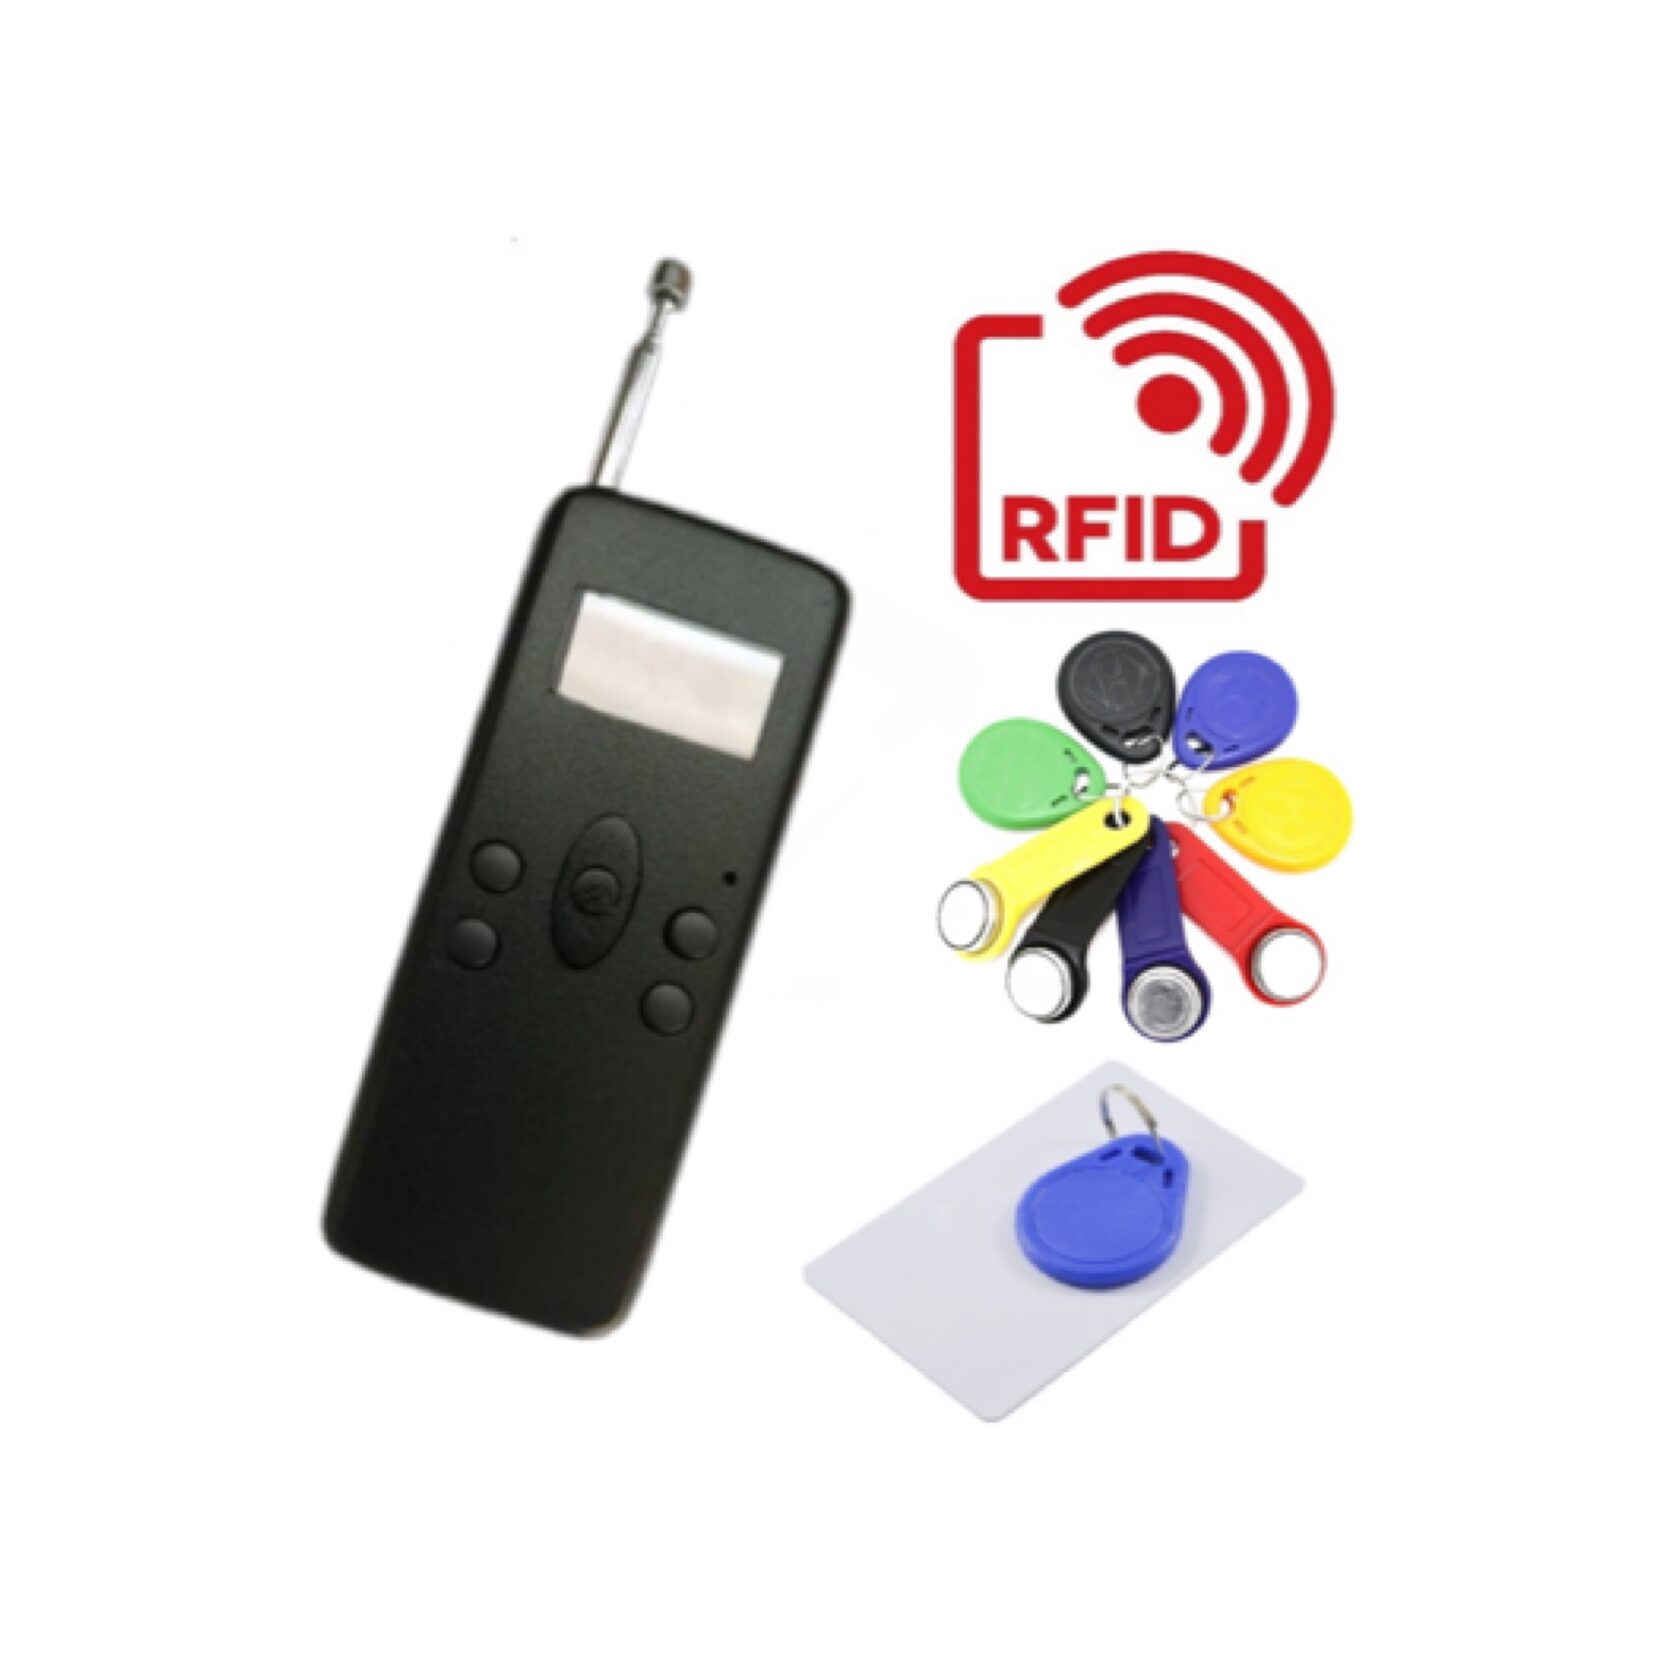 Кодграббер для шлагбаумов + RFID. карты, метки, домофоны